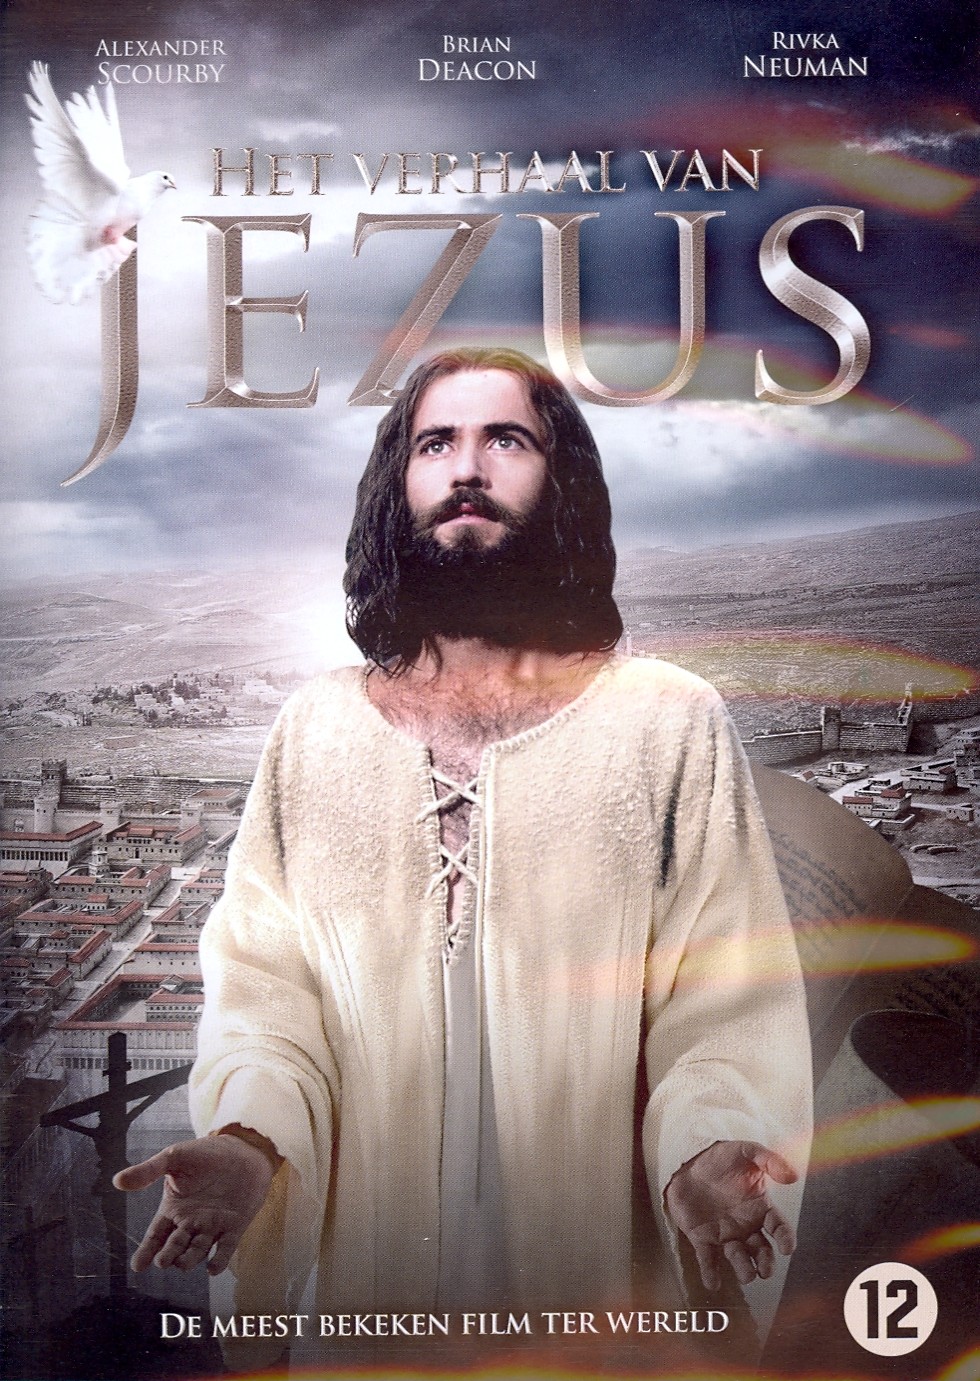 Het verhaal van Jezus